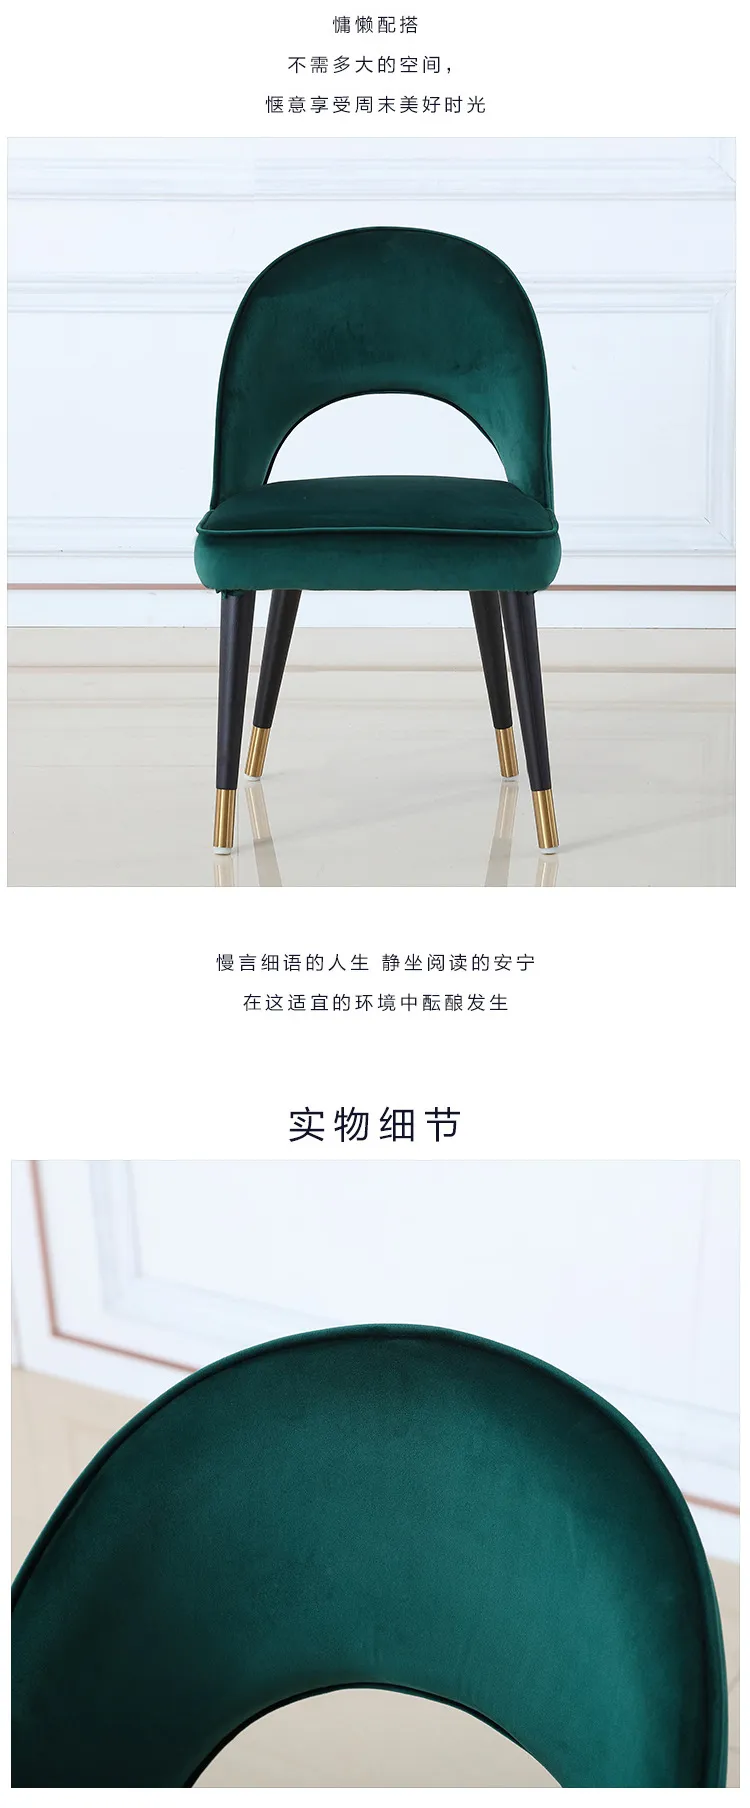 华松居 轻奢北欧实木金属餐椅现代简约家用椅子 CY820-29#(图2)